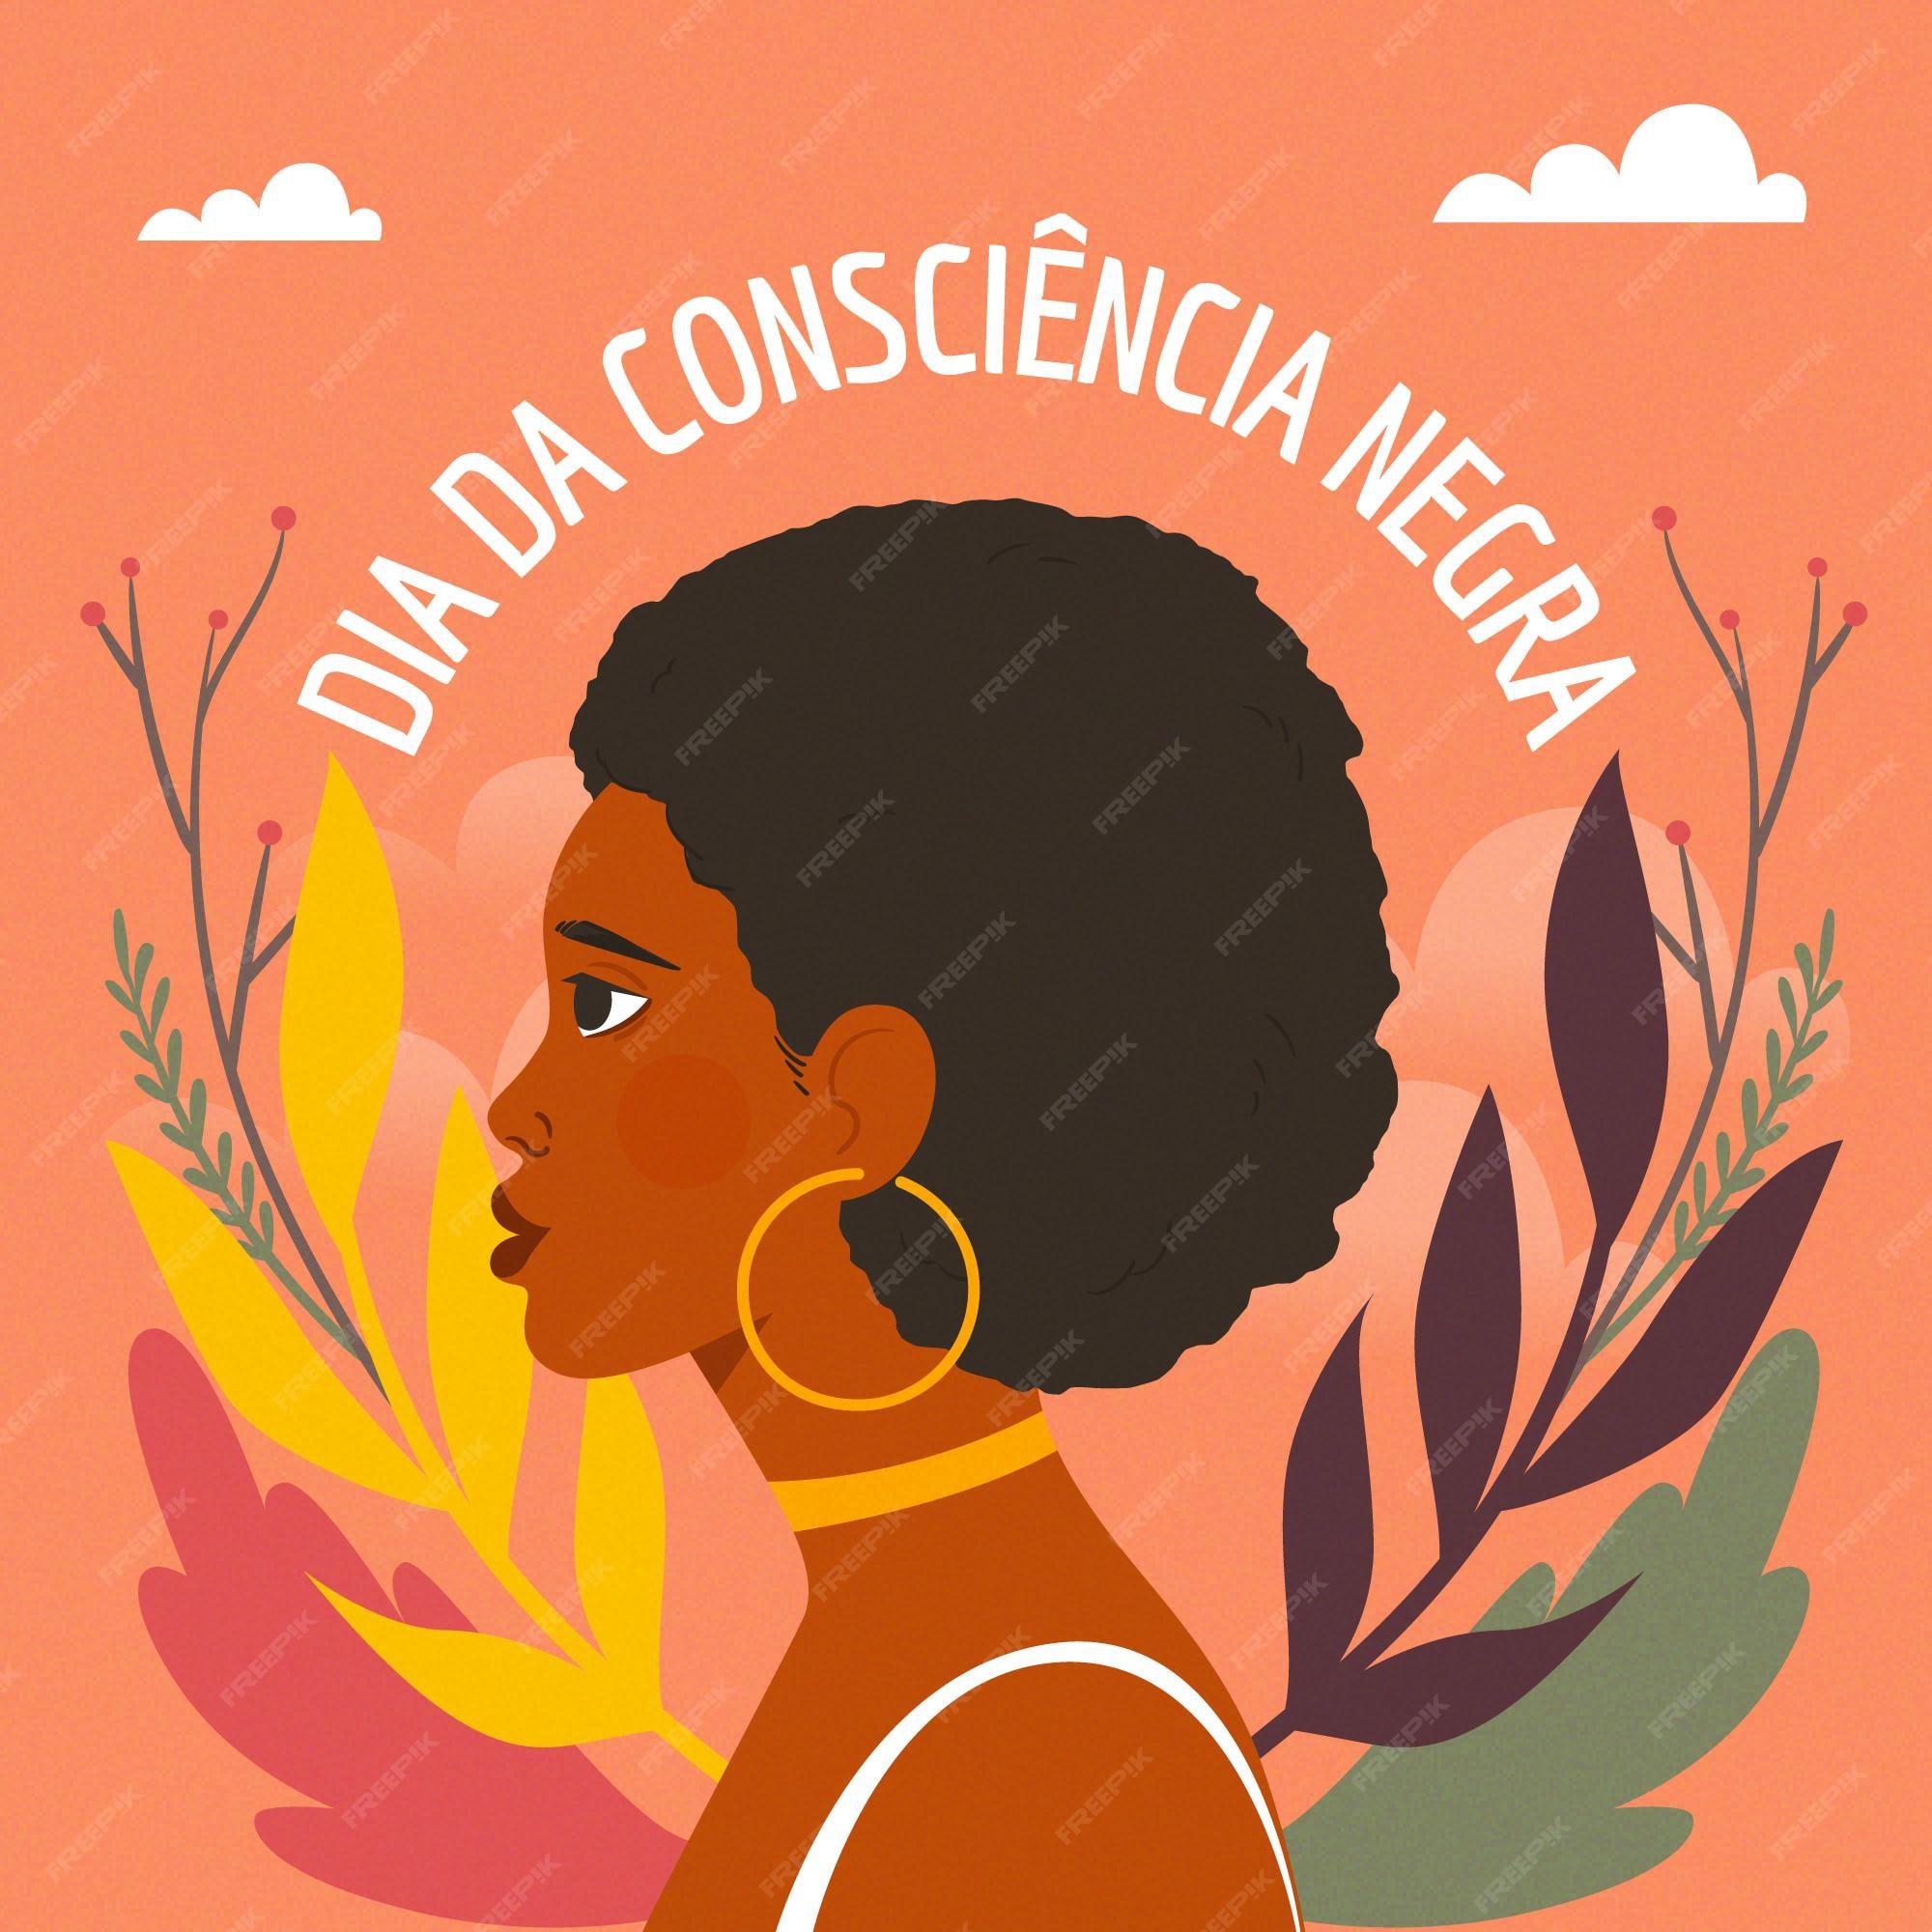 Dia Da Consciencia Negra Imagens – Download Grátis no Freepik